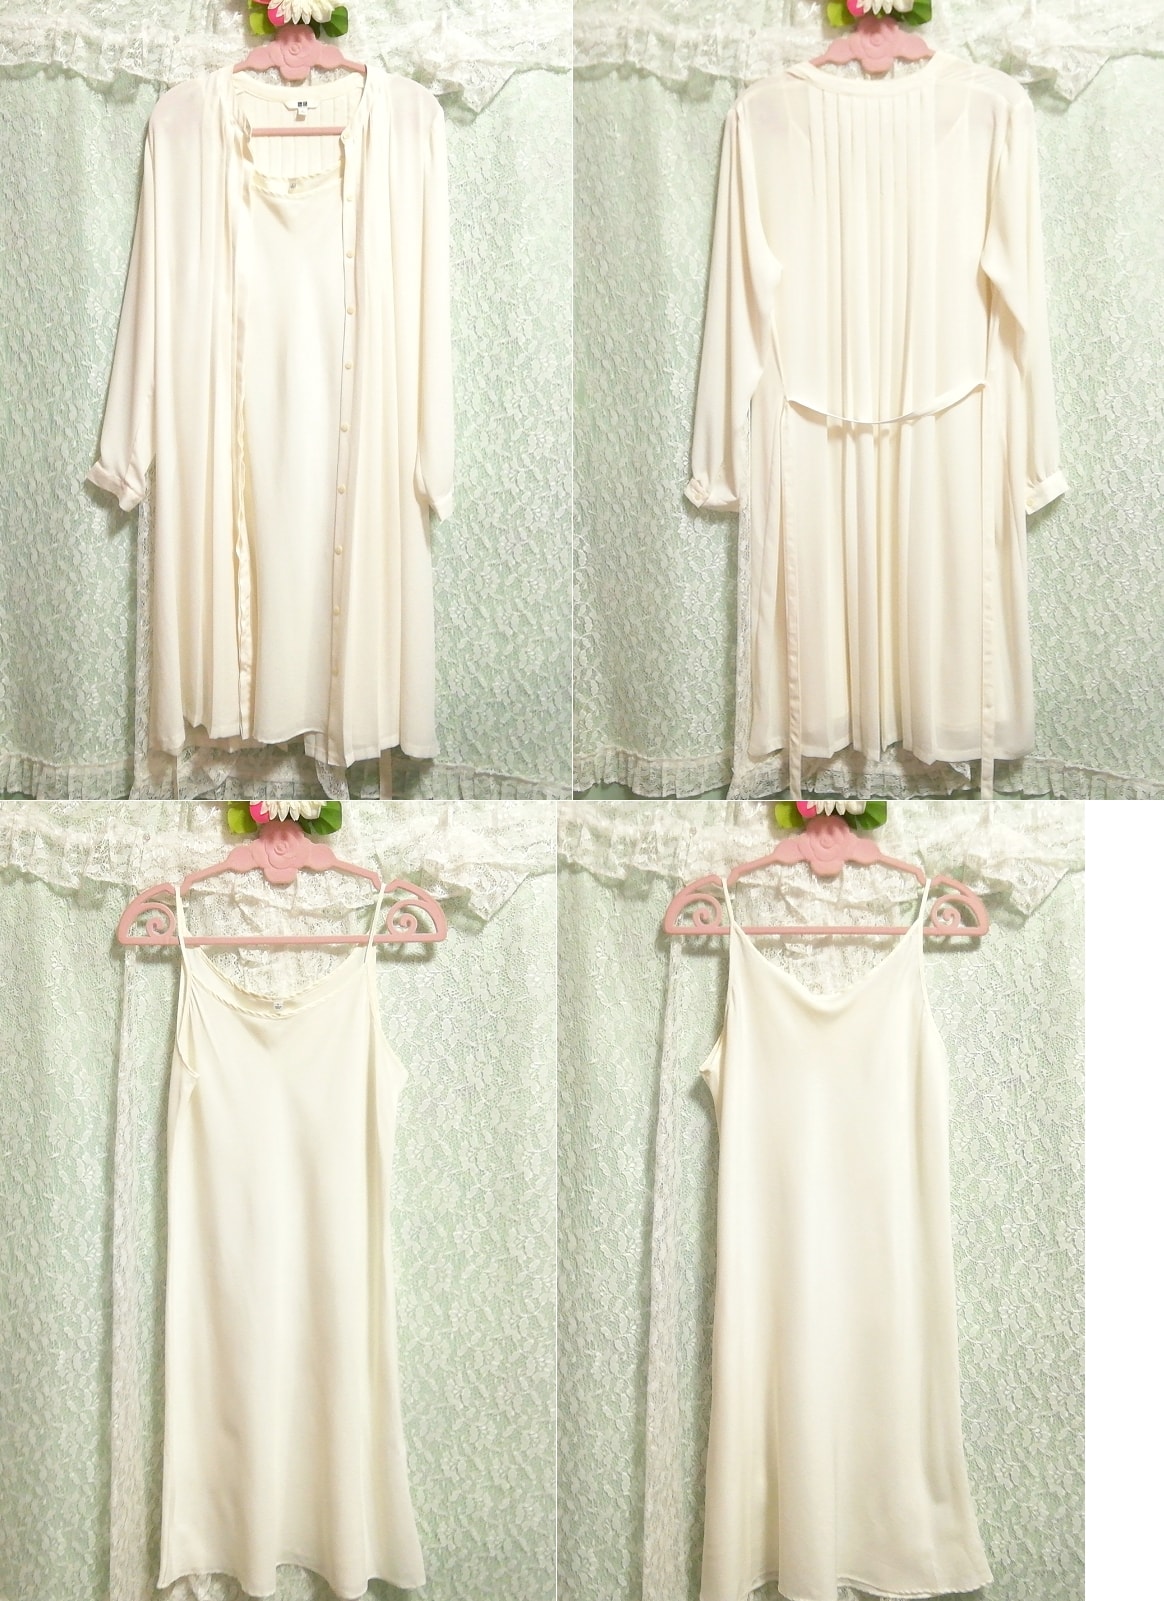 Vestido haori de gasa liso blanco floral bata camisón camisola vestido 2P, moda, moda para damas, ropa de dormir, pijama